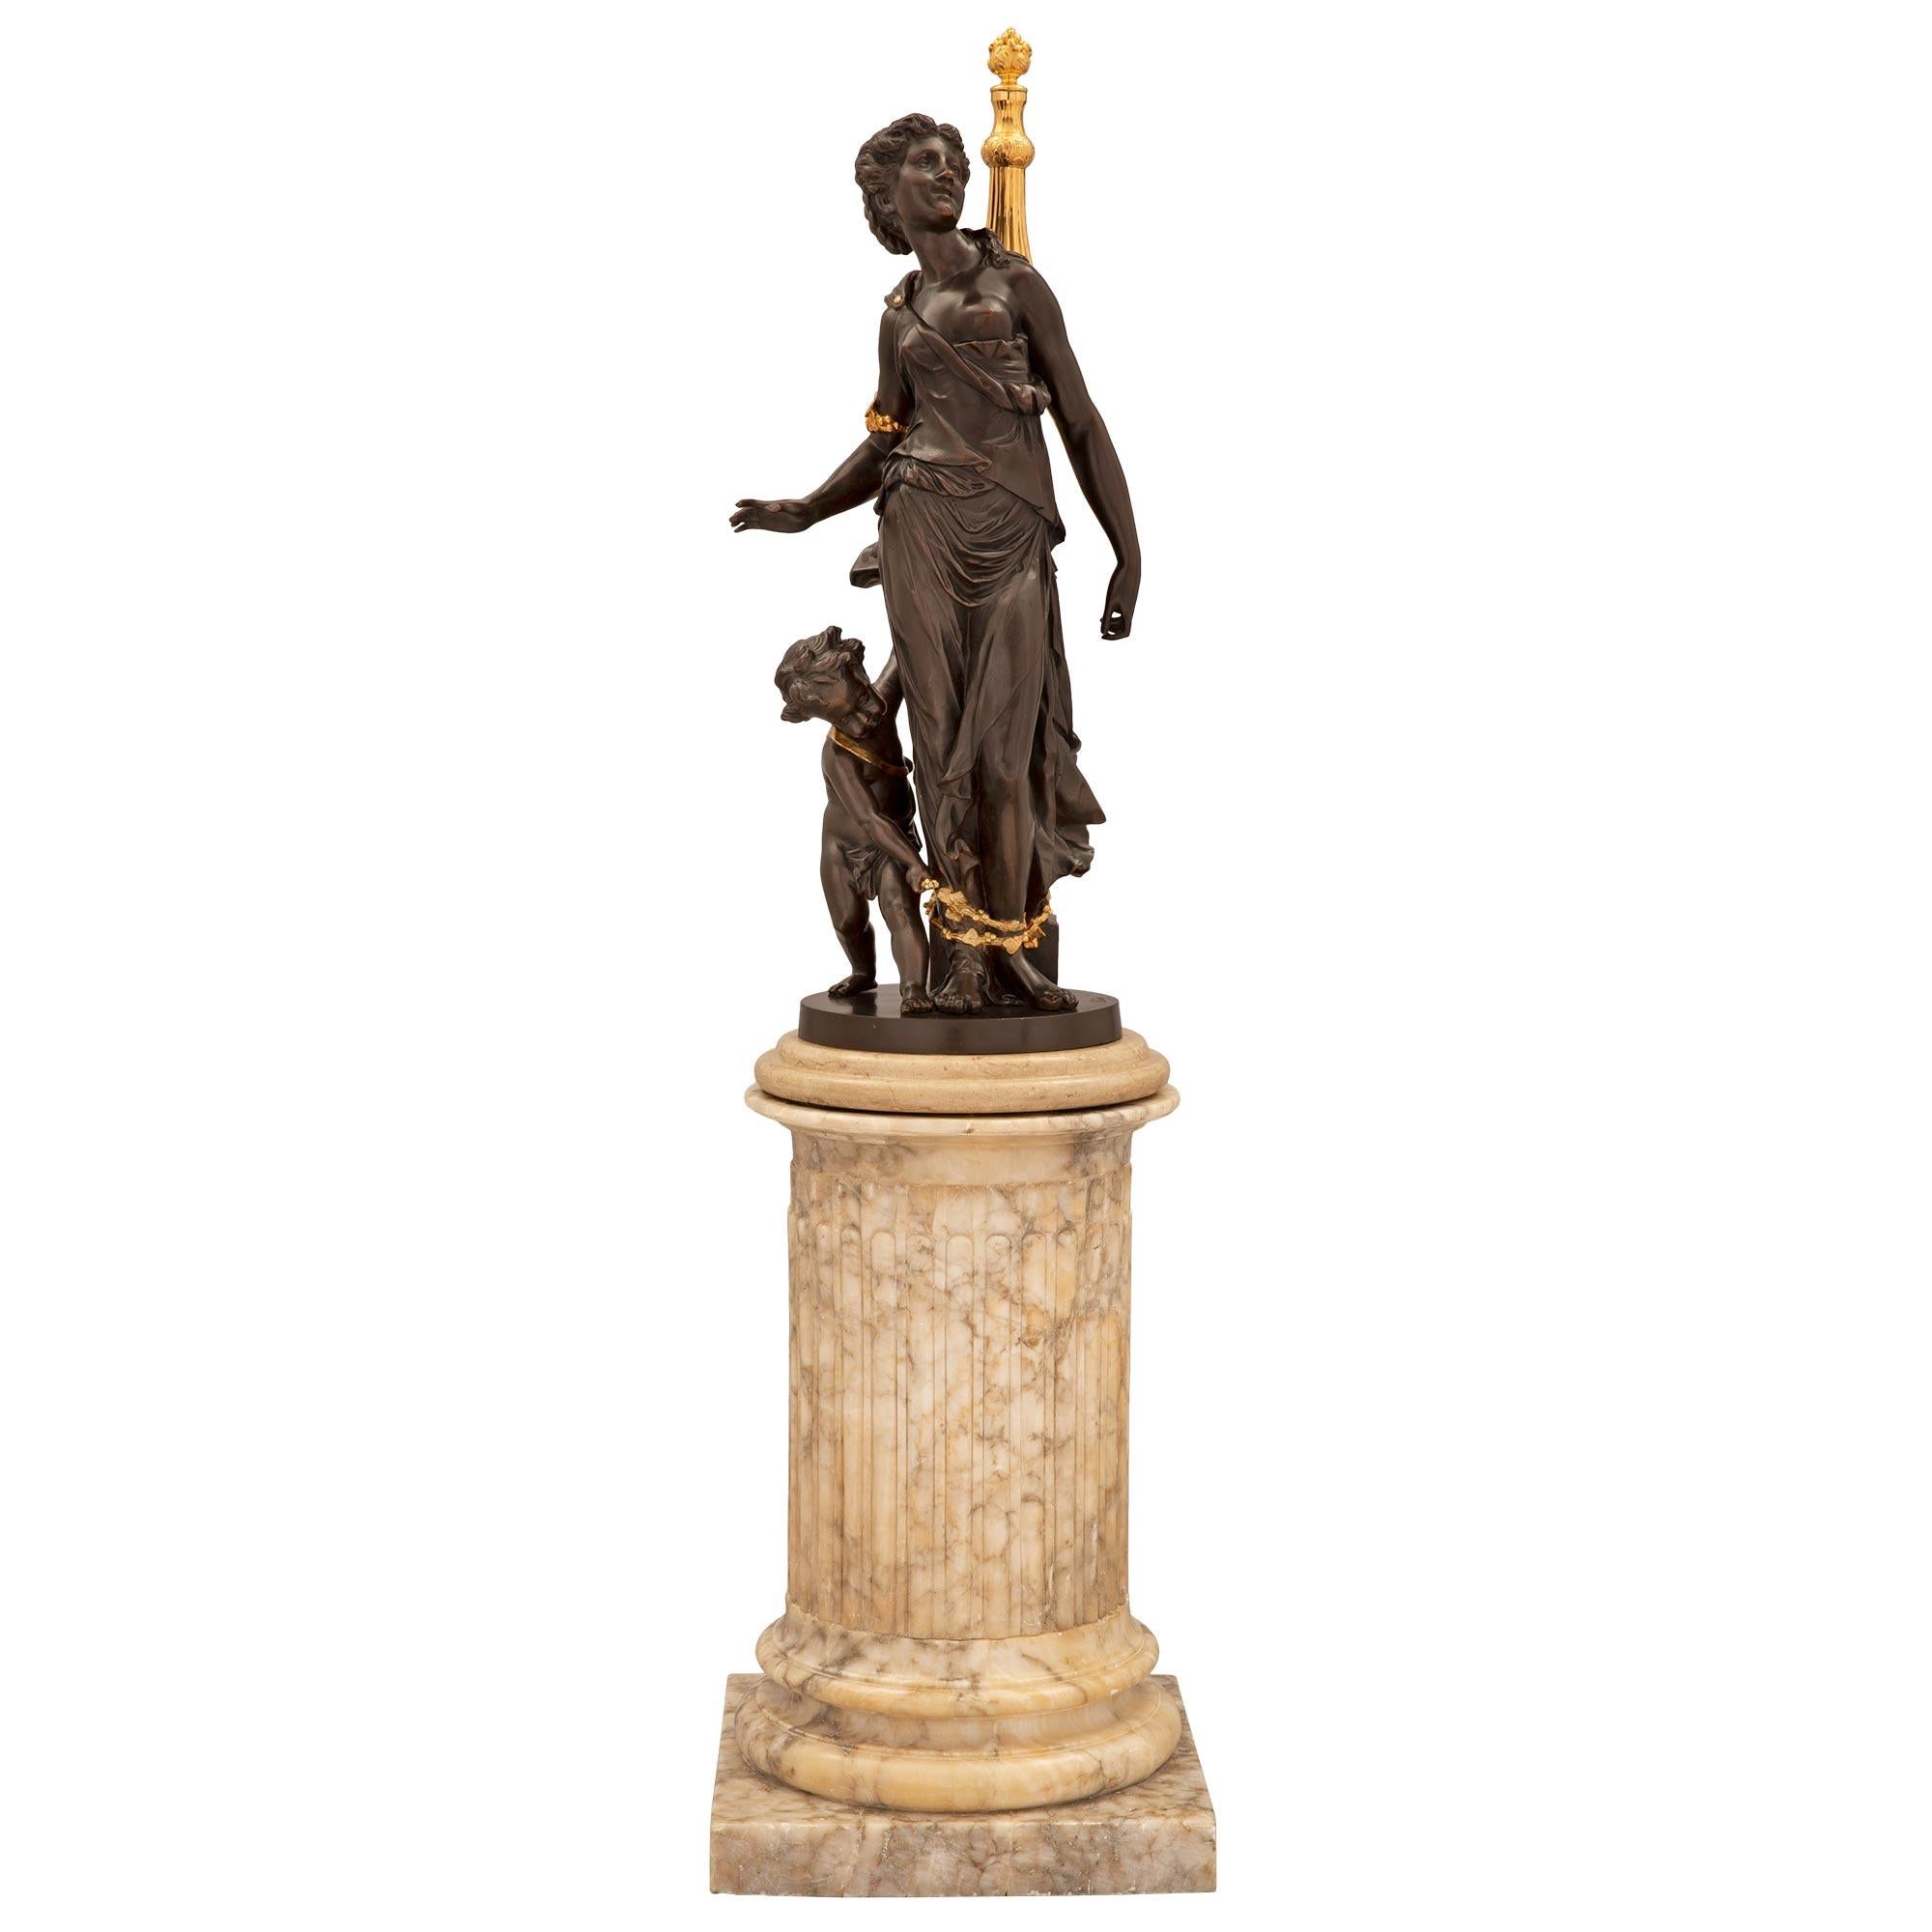 Charmante statue française du 19ème siècle de style Louis XVI en bronze patiné, bronze doré et marbre Notre Dame, signée Clodion. La statue est élevée sur un élégant piédestal en marbre Notre Dame, avec une base carrée et une fine colonne centrale